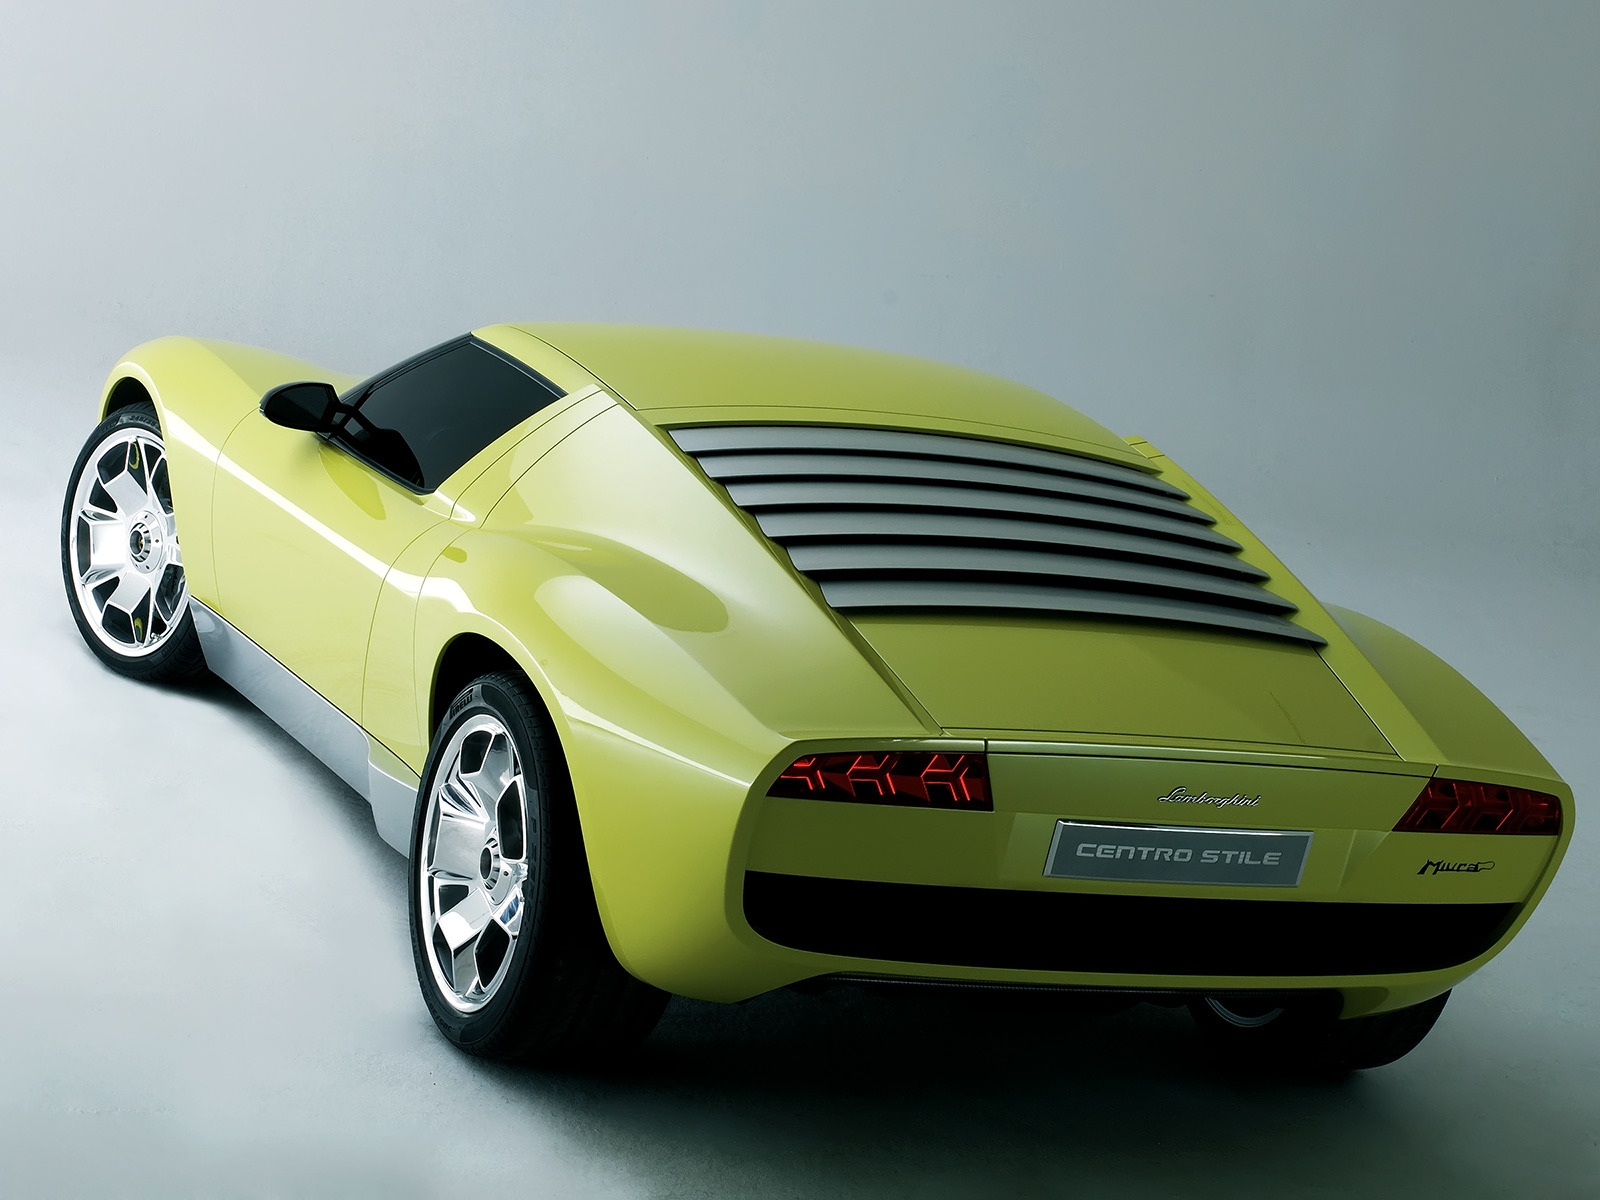 Lamborghini Miura Concept Rear for 1600 x 1200 resolution